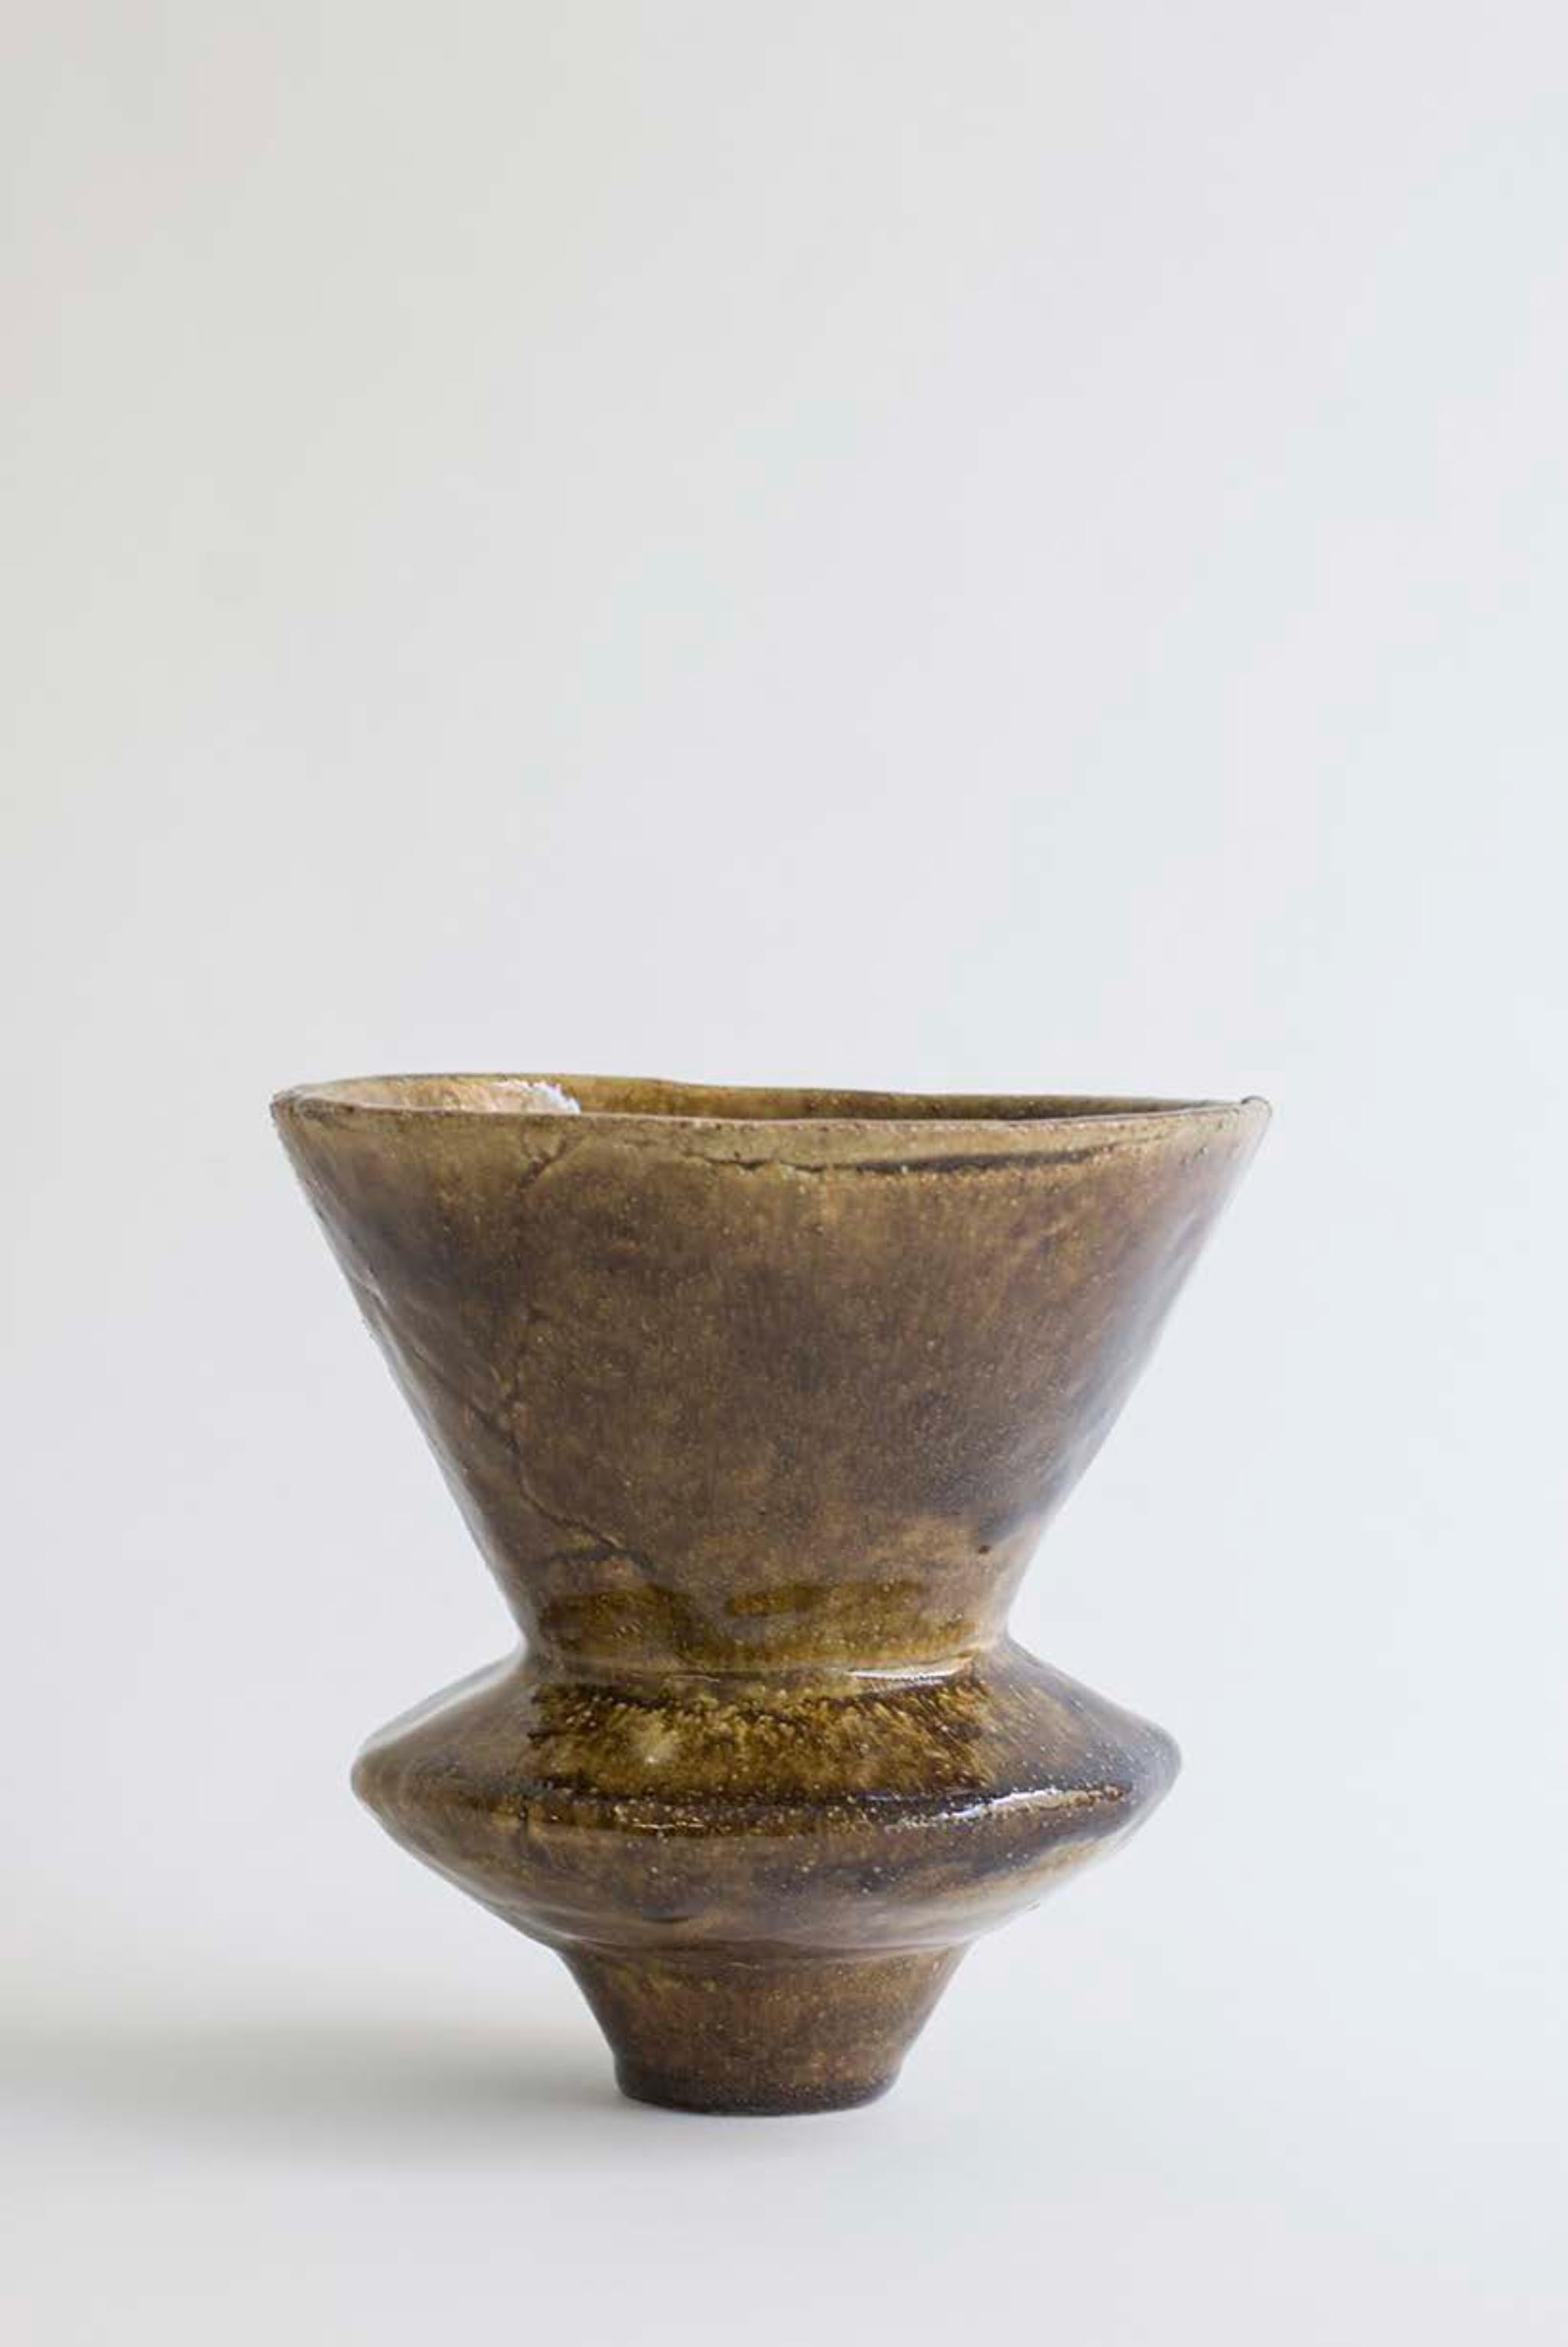 Einzigartige Vase Arq 010 von Raquel Vidal und Pedro Paz
Abmessungen: Ø 15,5 x H 16,5 cm
MATERIAL: handgeformtes glasiertes Steinzeug.

Die Arq-Serie ist aus unserer eigenen Produktion hervorgegangen. Sie lässt sich von der Archäologie inspirieren